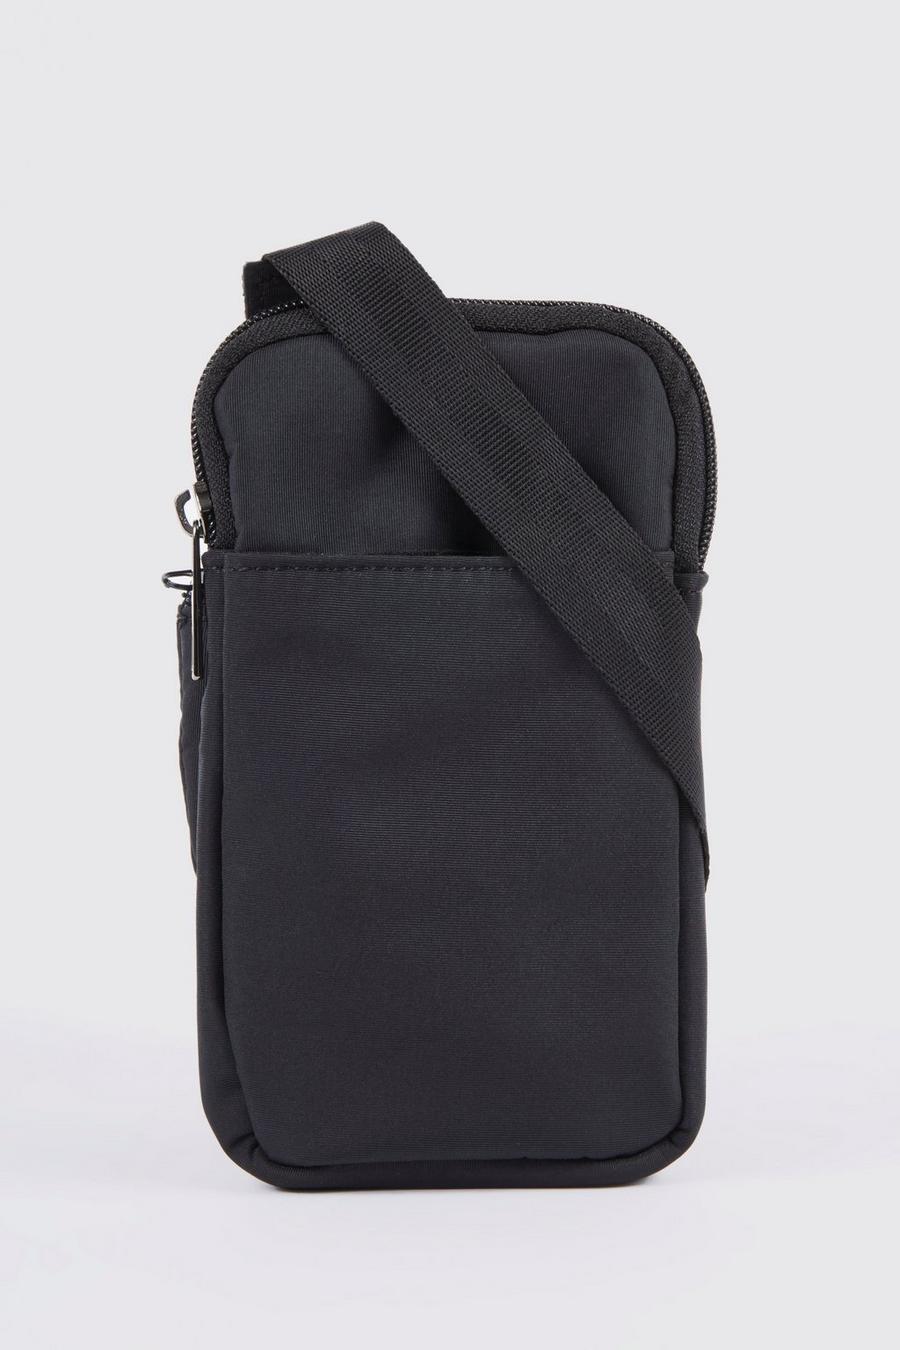 Borsello porta-Smart Phone in nylon, Black negro